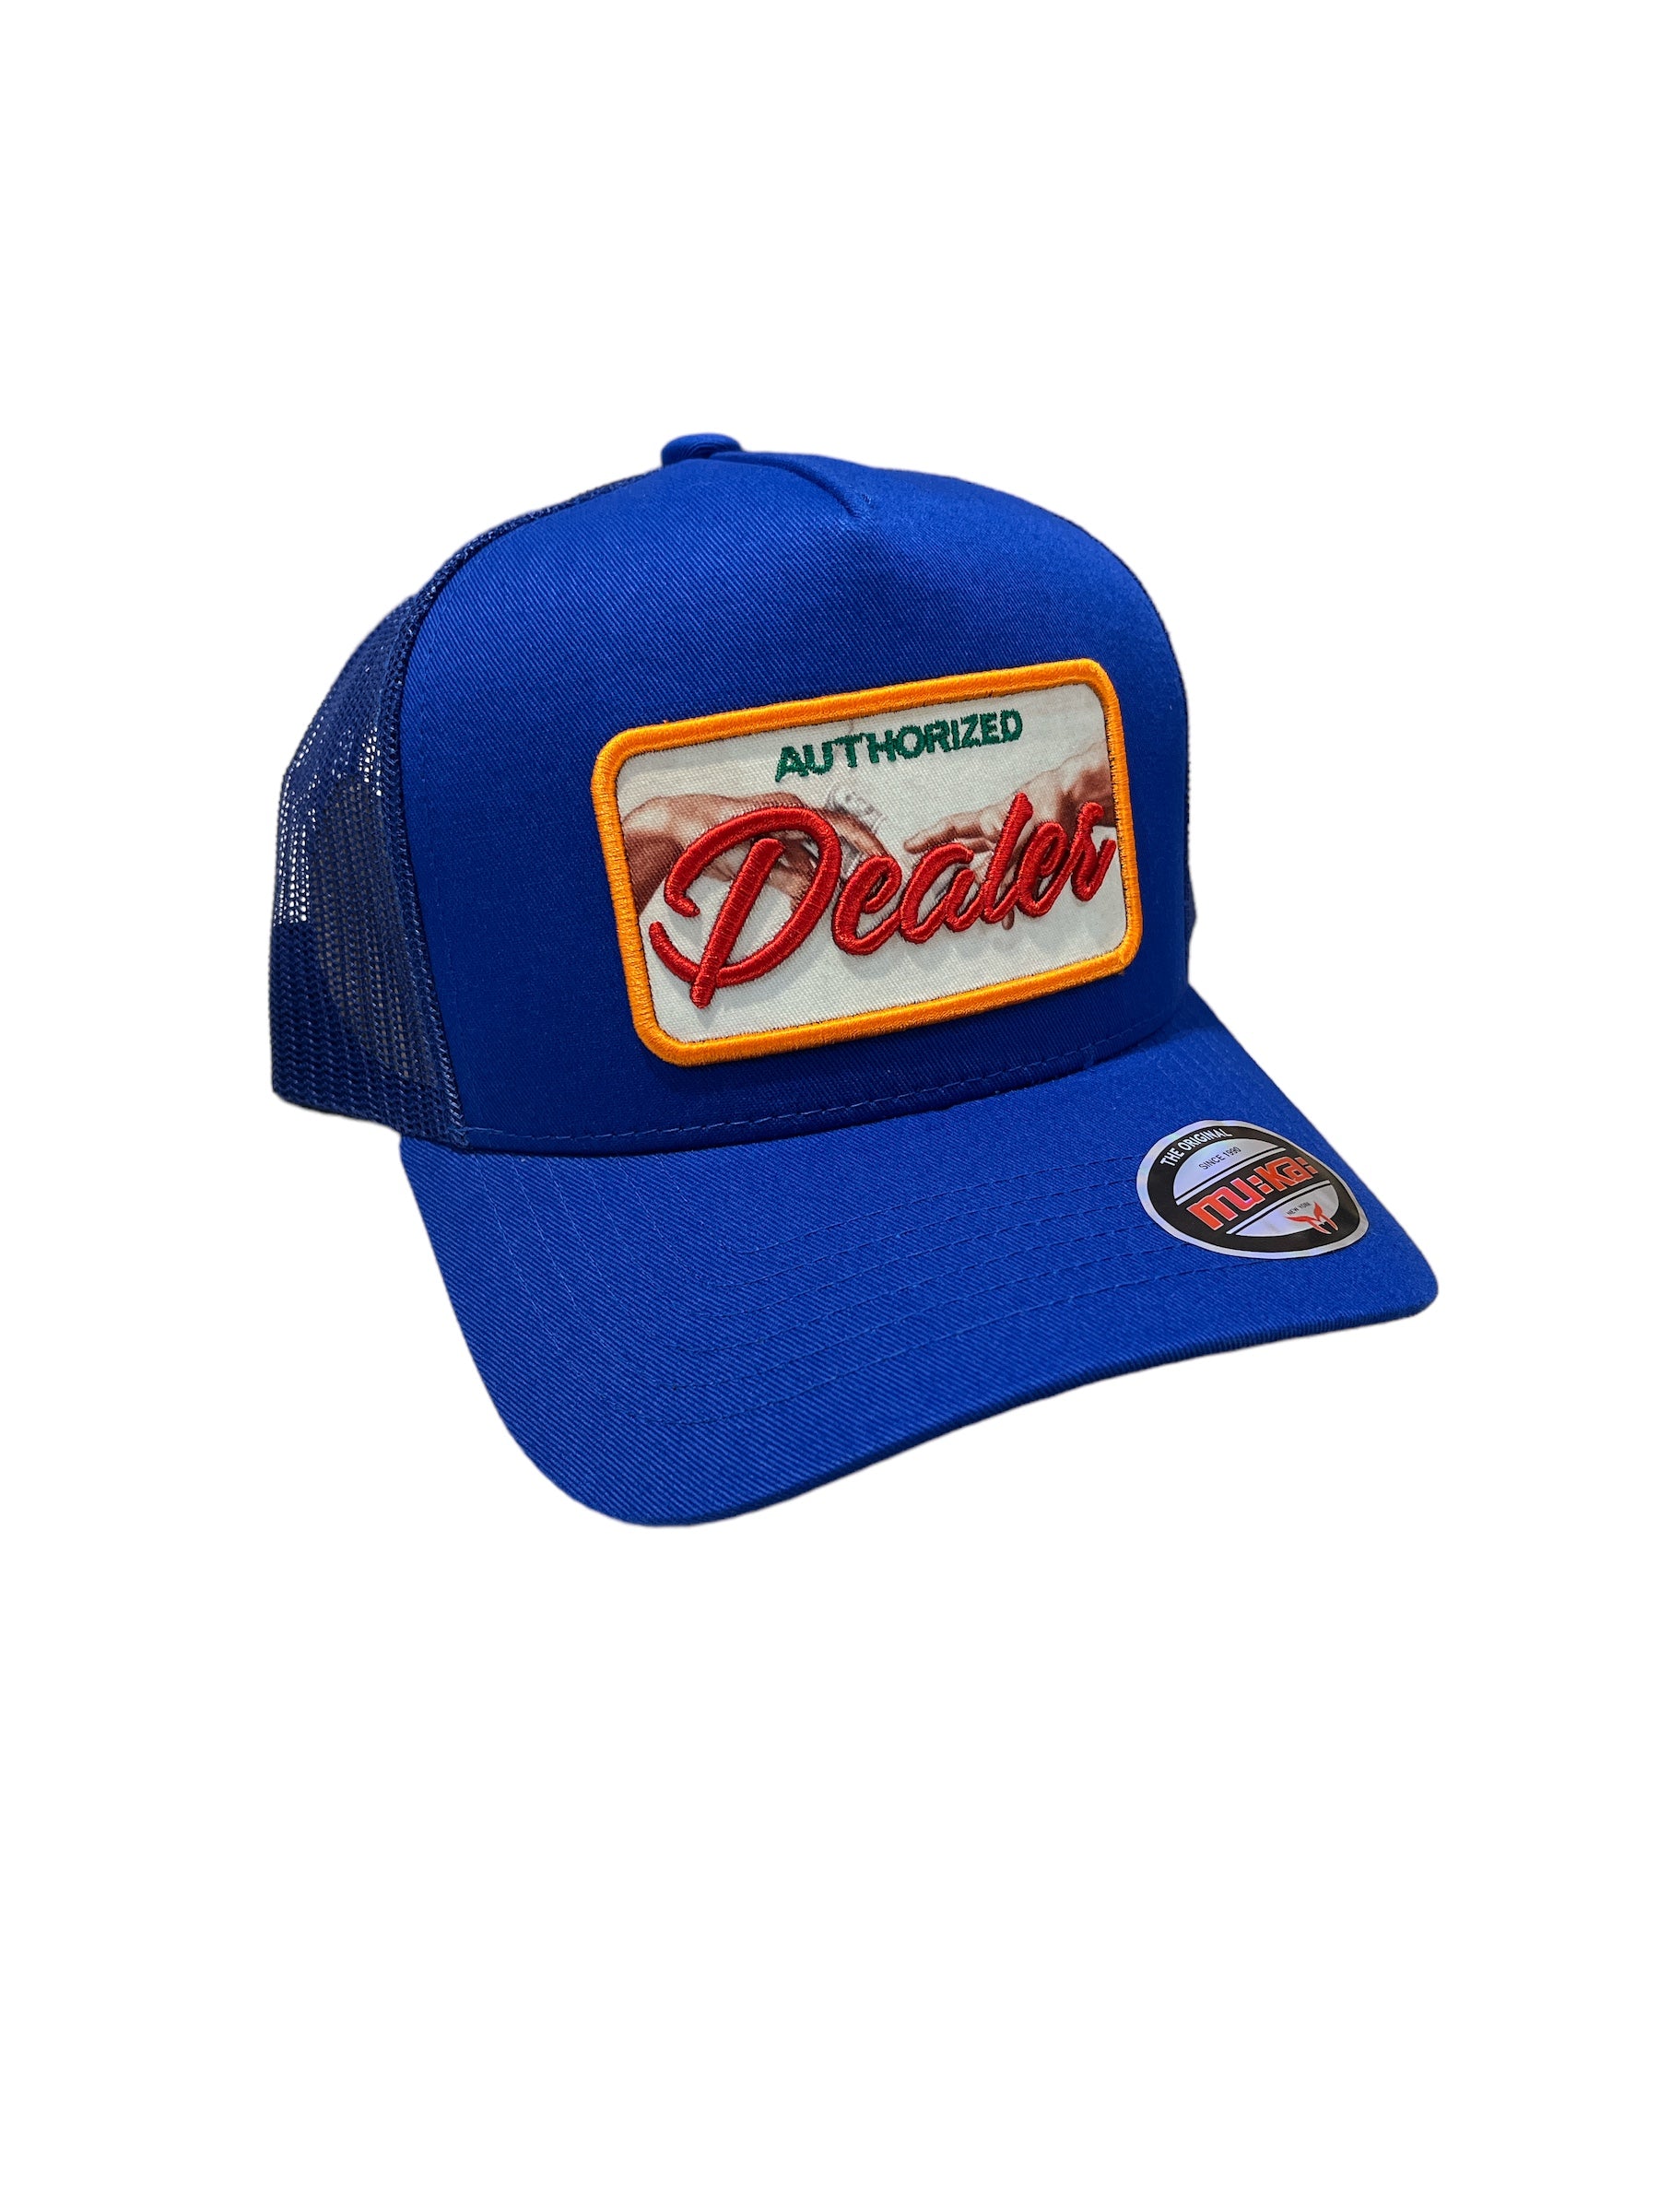 Muka 'Dealer' Trucker Hat (Royal) MUM2250